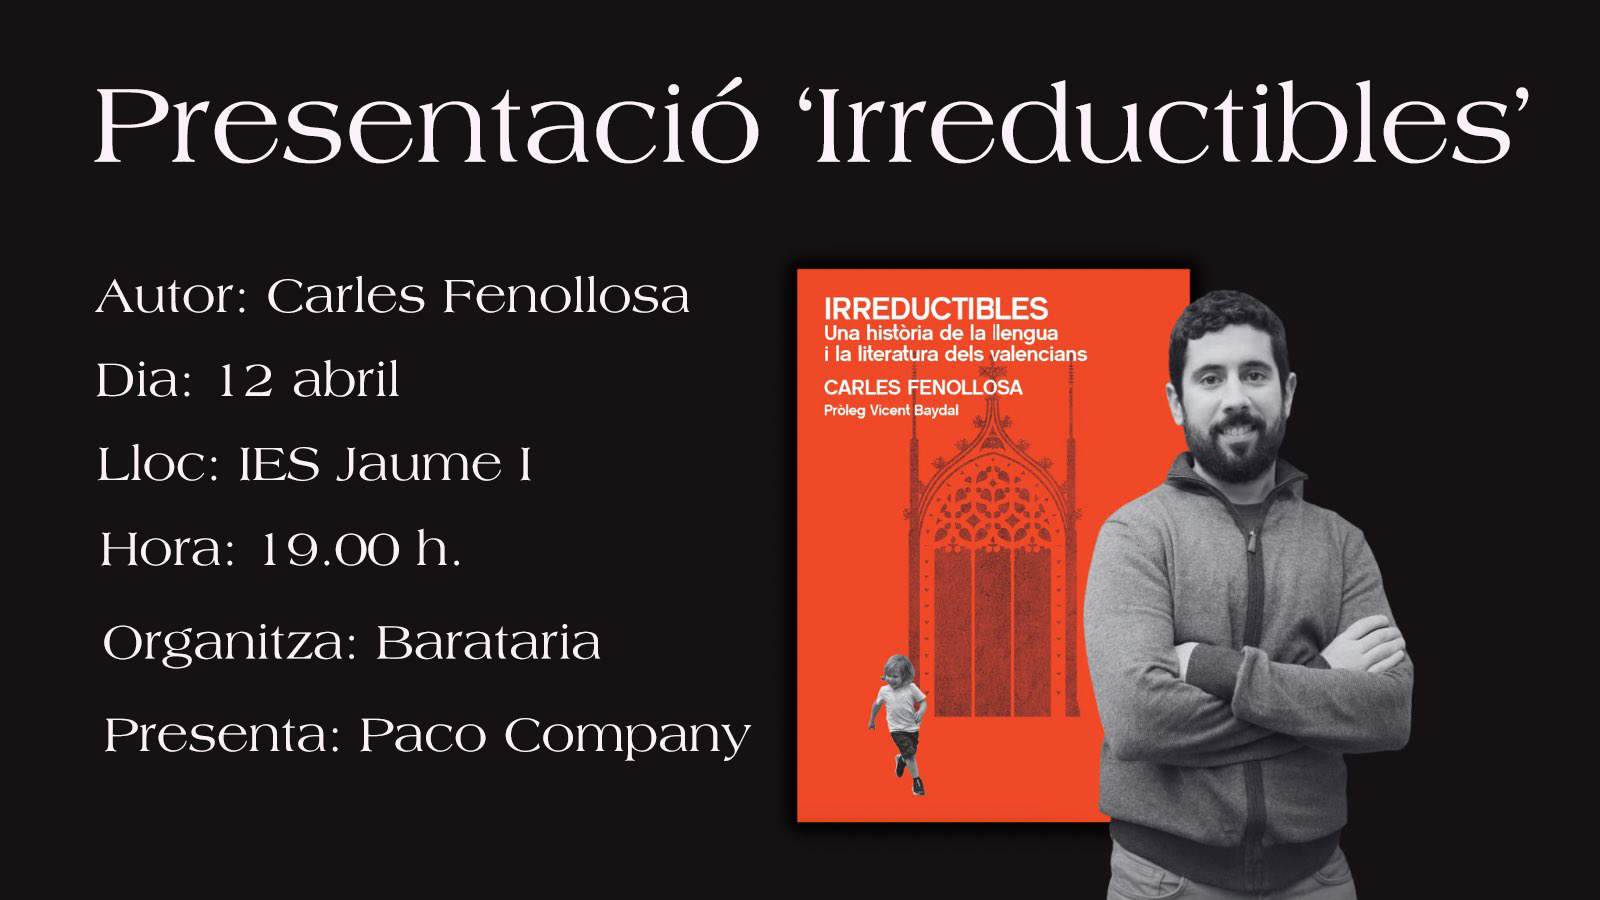 Presentació del llibre "Irreductibles" de Carles Fenollosa